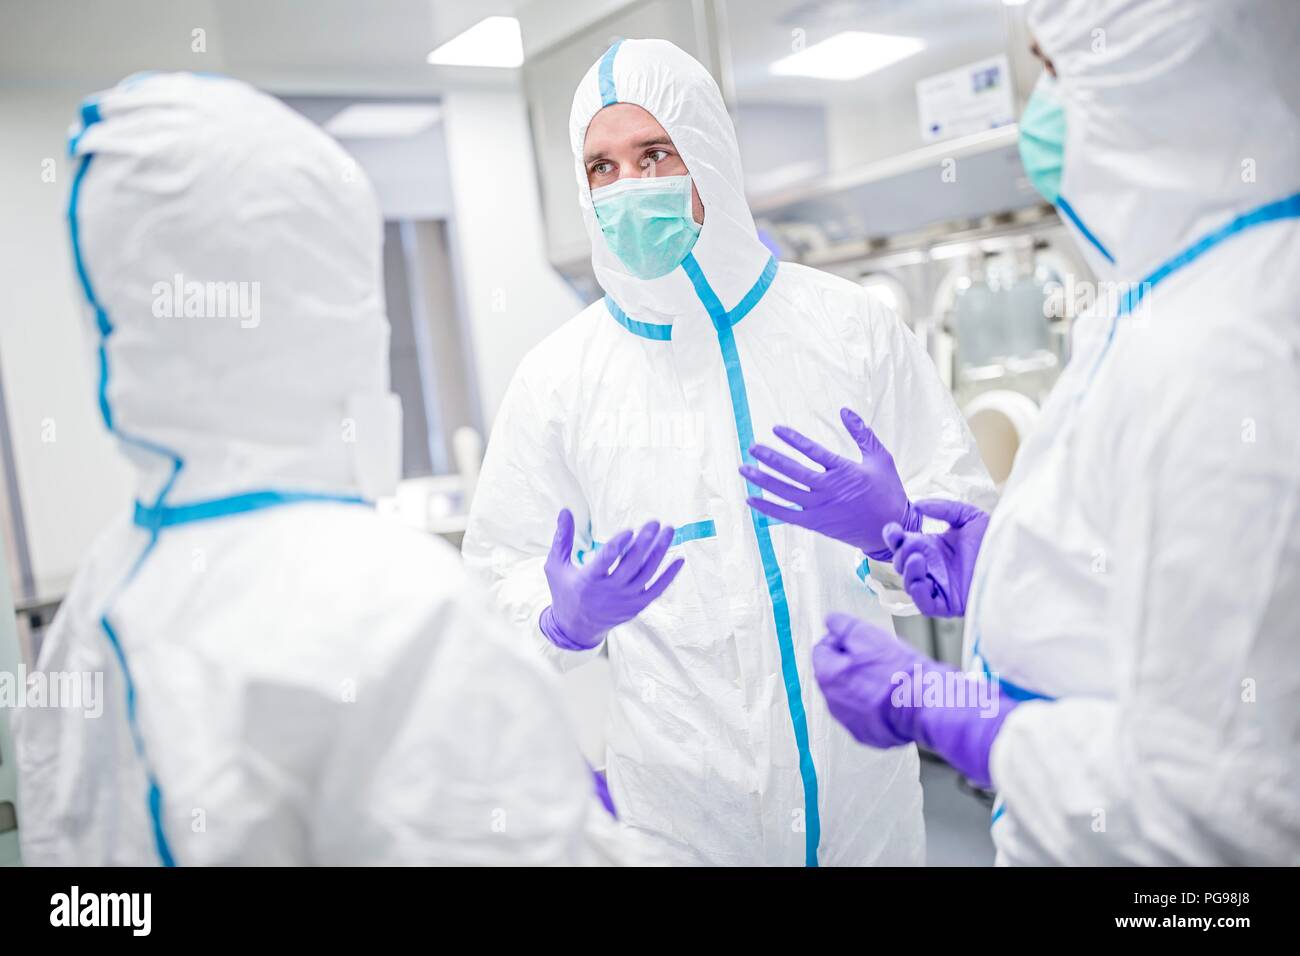 Los técnicos de laboratorio el uso de trajes de protección y máscaras para la cara en un laboratorio que debe mantener un ambiente estéril. Foto de stock